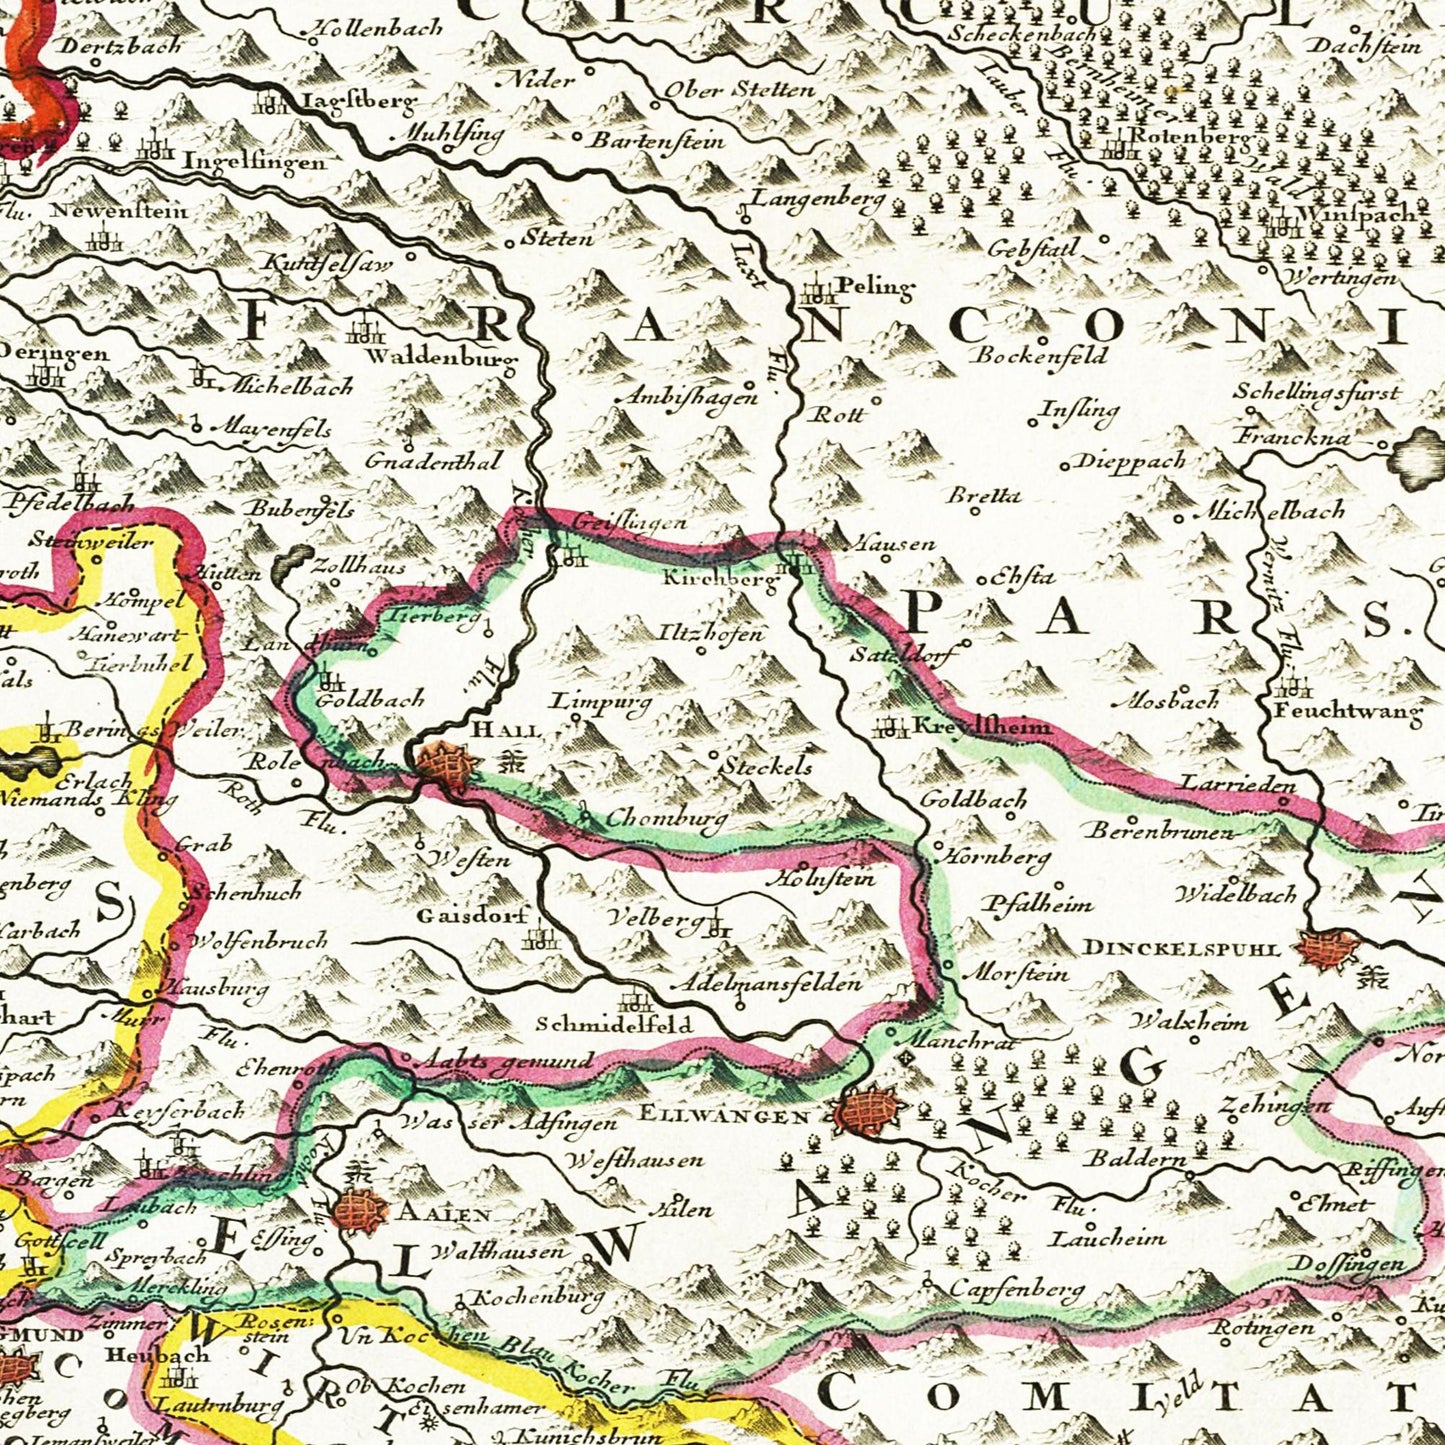 Historische Landkarte Württemberg um 1680